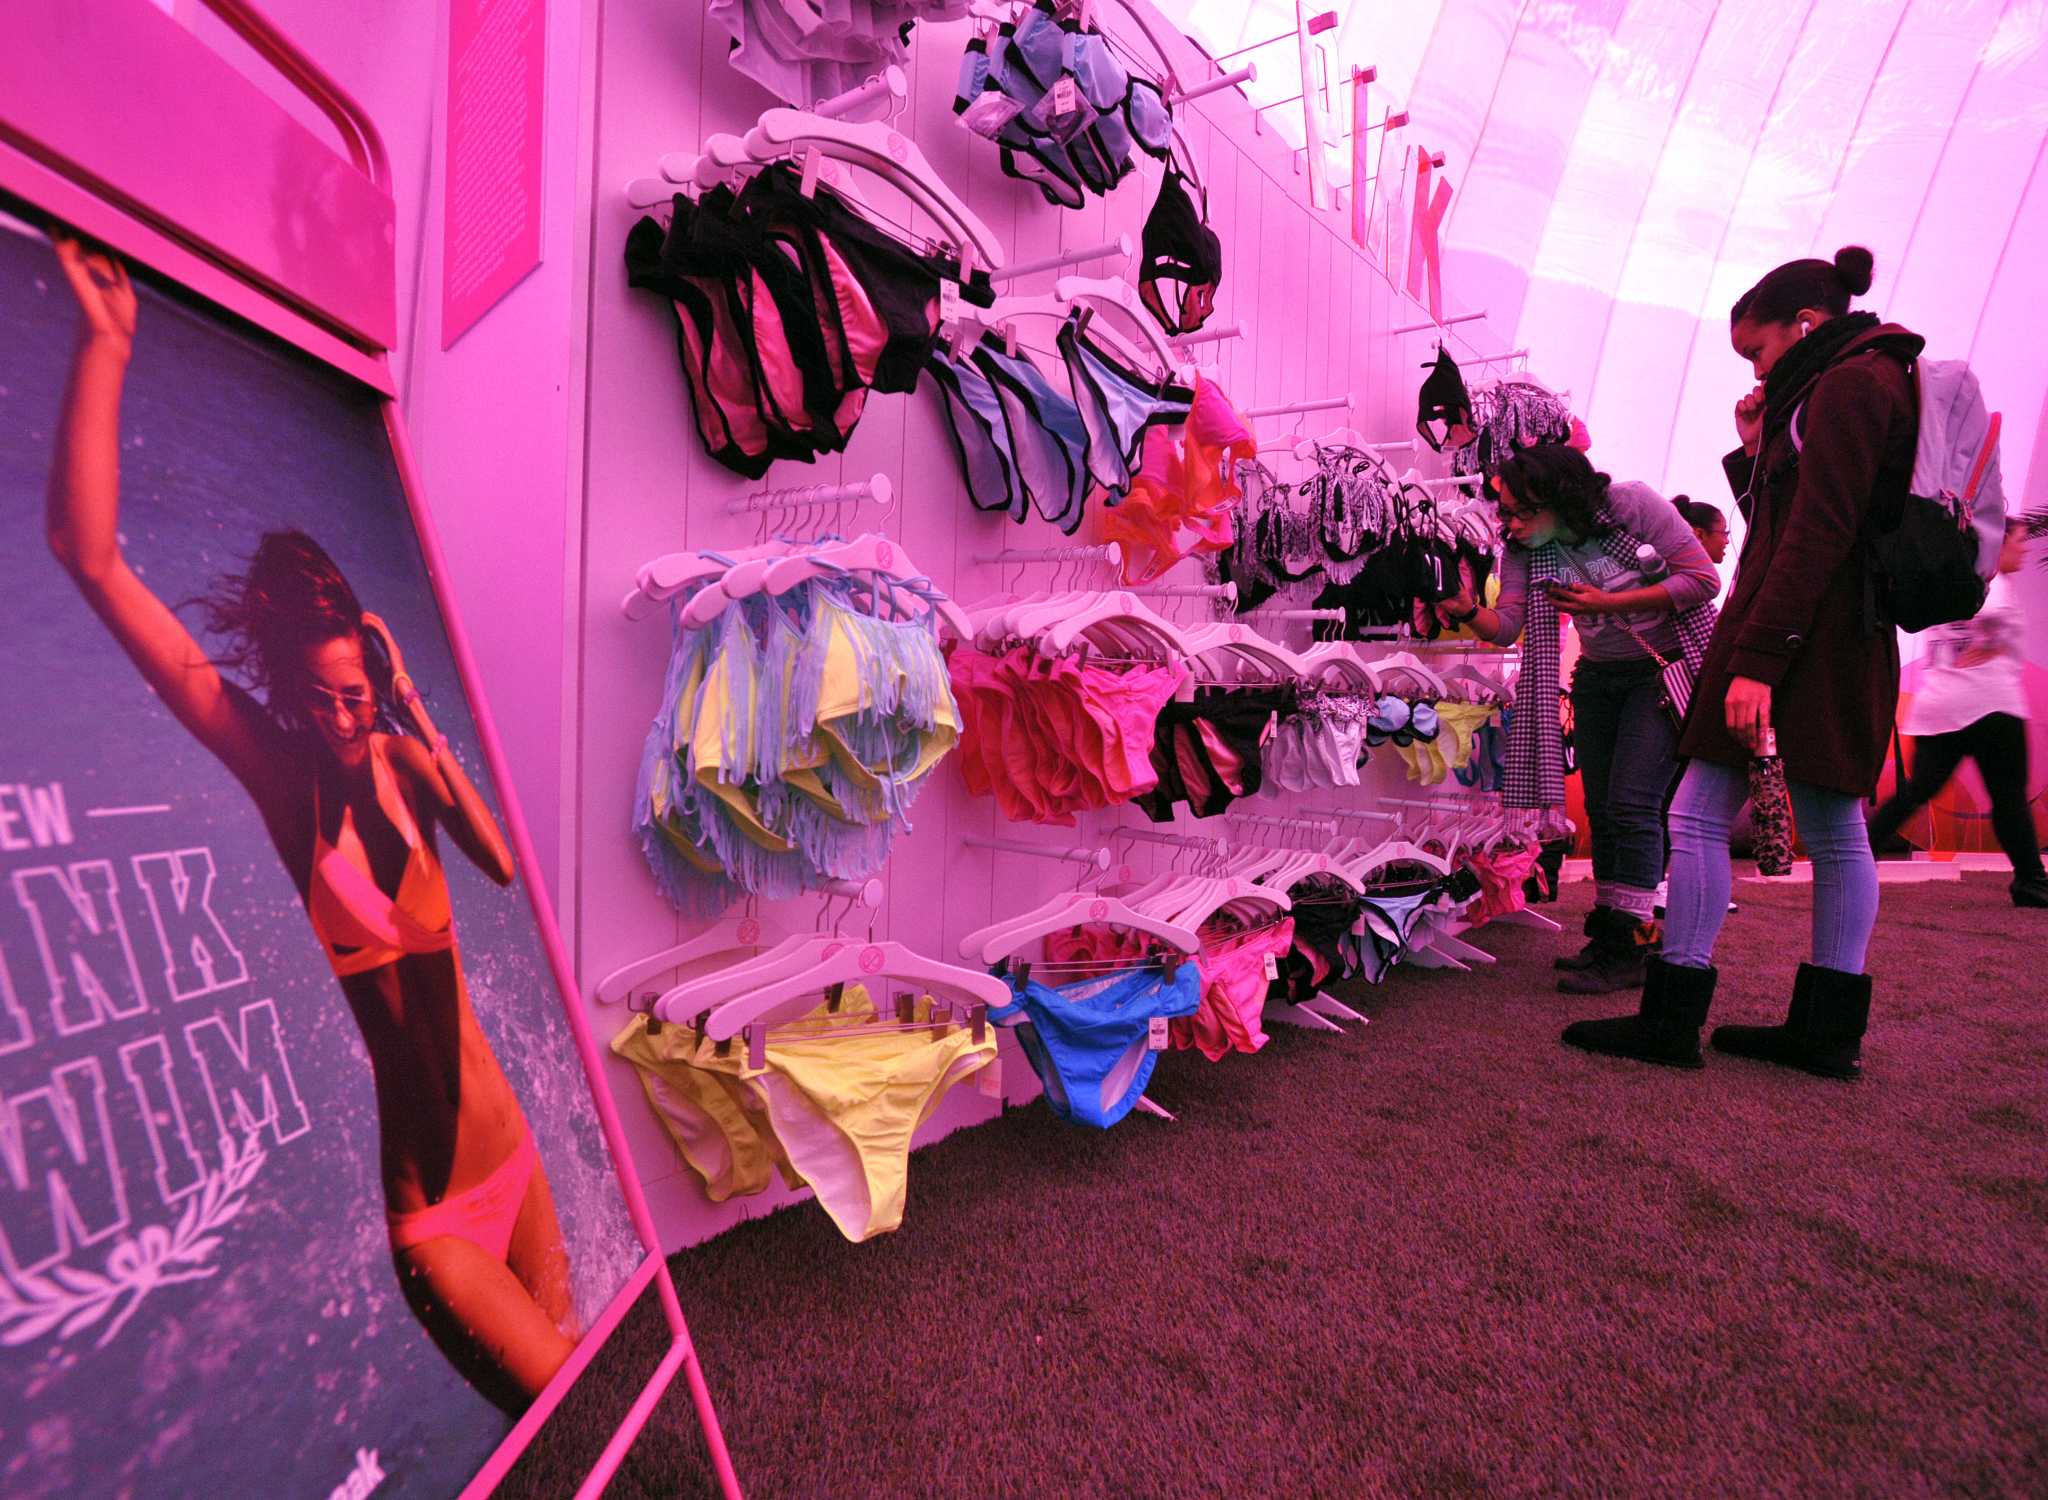 Victoria's secret pink underwear and ladies store in Manchester